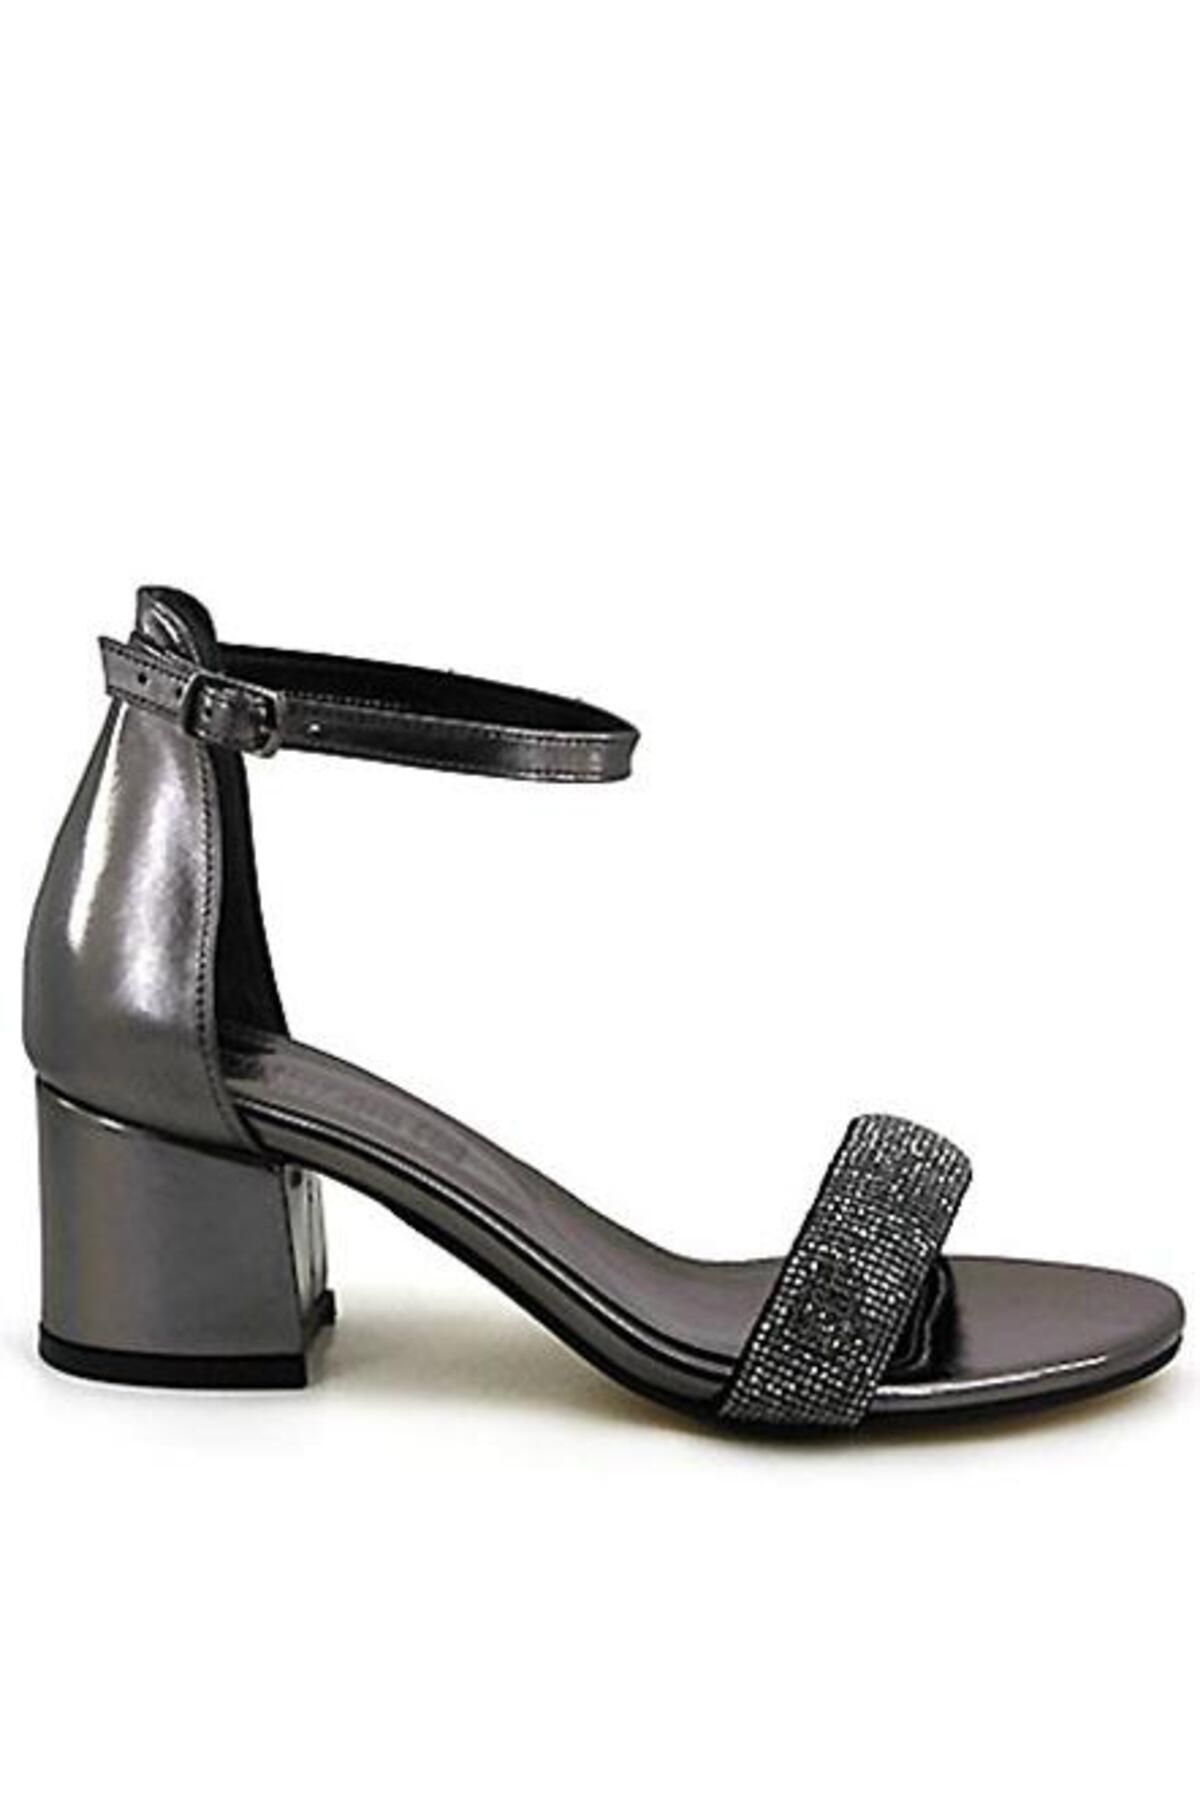 FS KOMBİN Torino Kadın Platin Tek Bant Kristal Taşlı Kalın Alçak Topuklu Ayakkabı